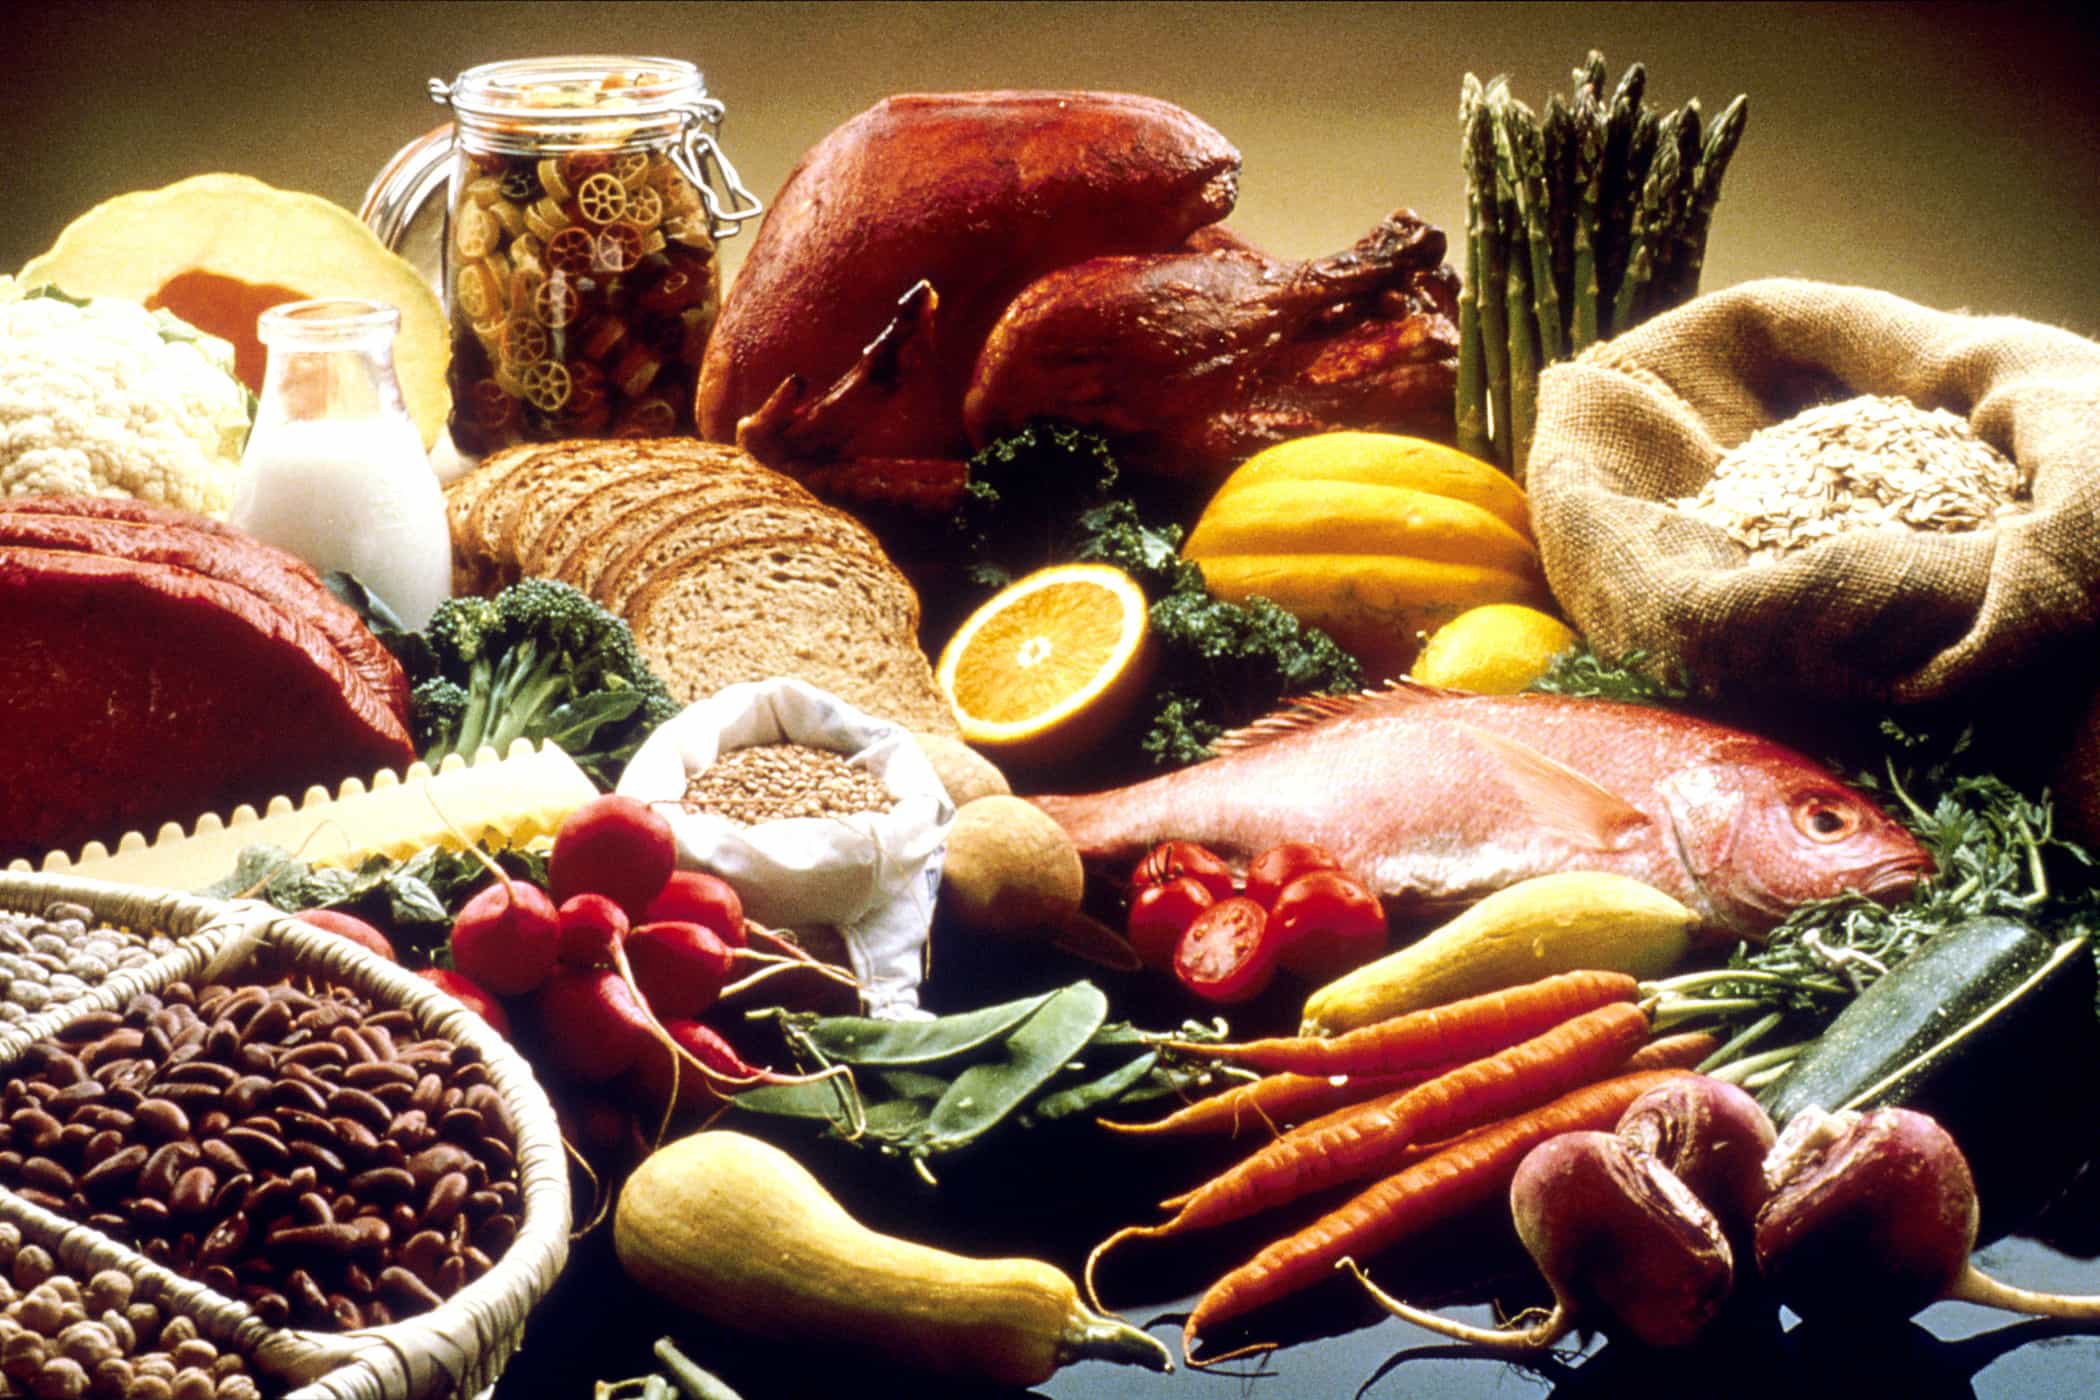 Tránh xa các thực phẩm chứa nhiều chất béo